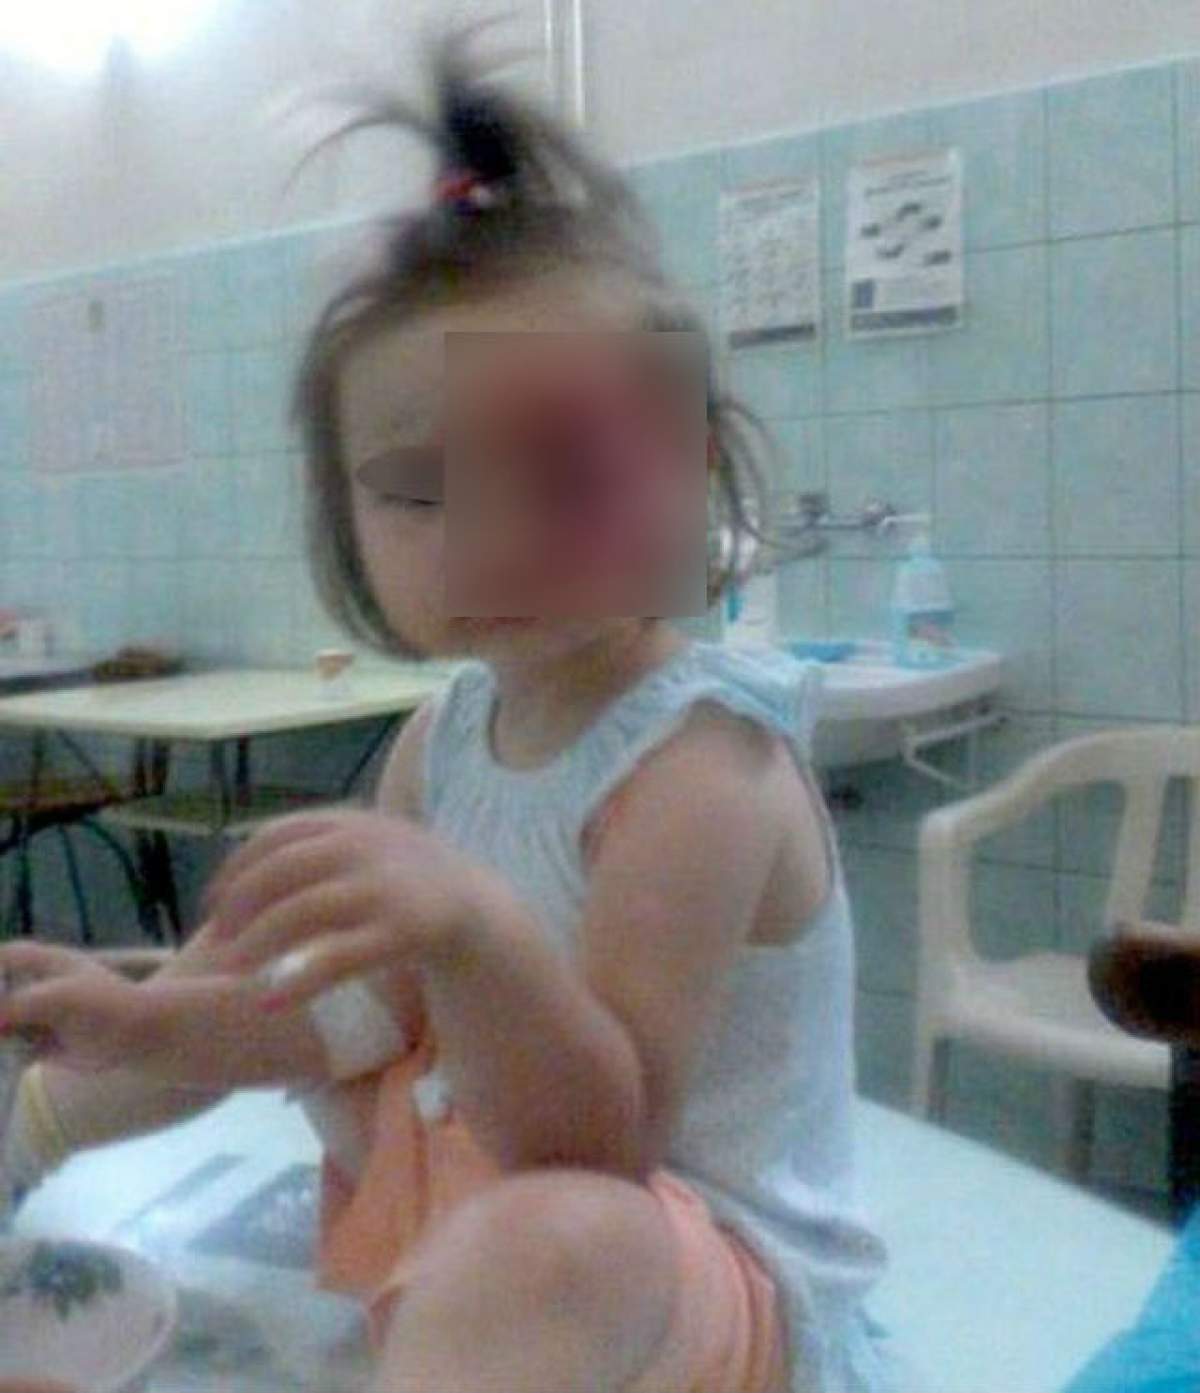 Accident teribil în Brăila! O fetiţă a fost mutilată de o şoferiţă neatentă! Declaraţia femeii este halucinantă